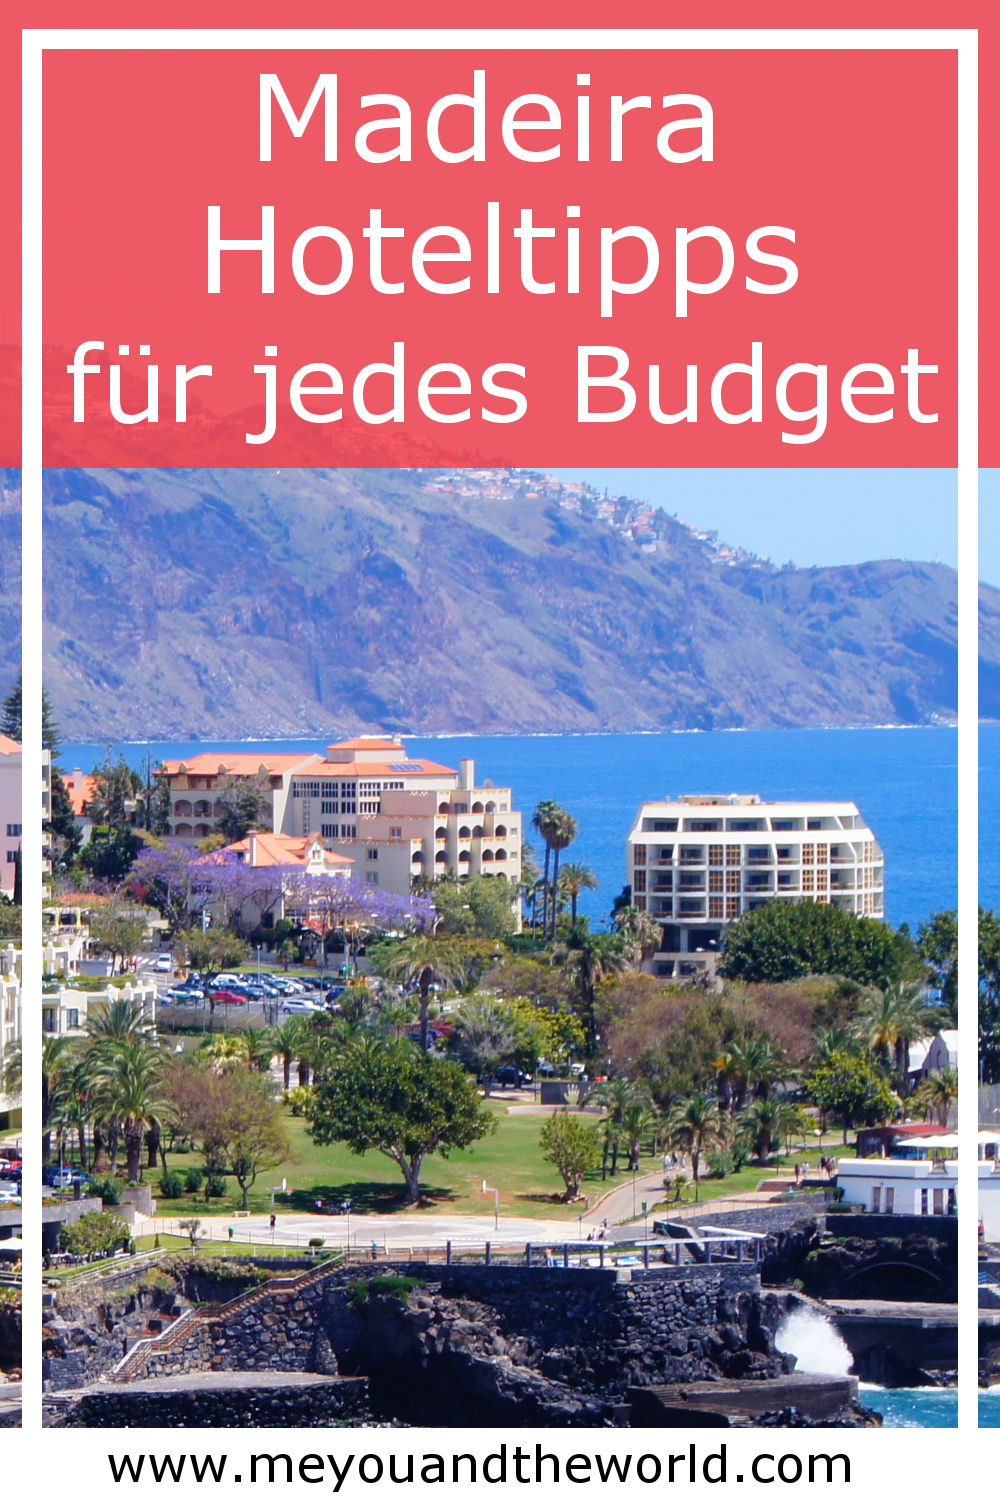 Uebernachten auf Madeira in Hotel oder Ferienwohnung die besten Tipps